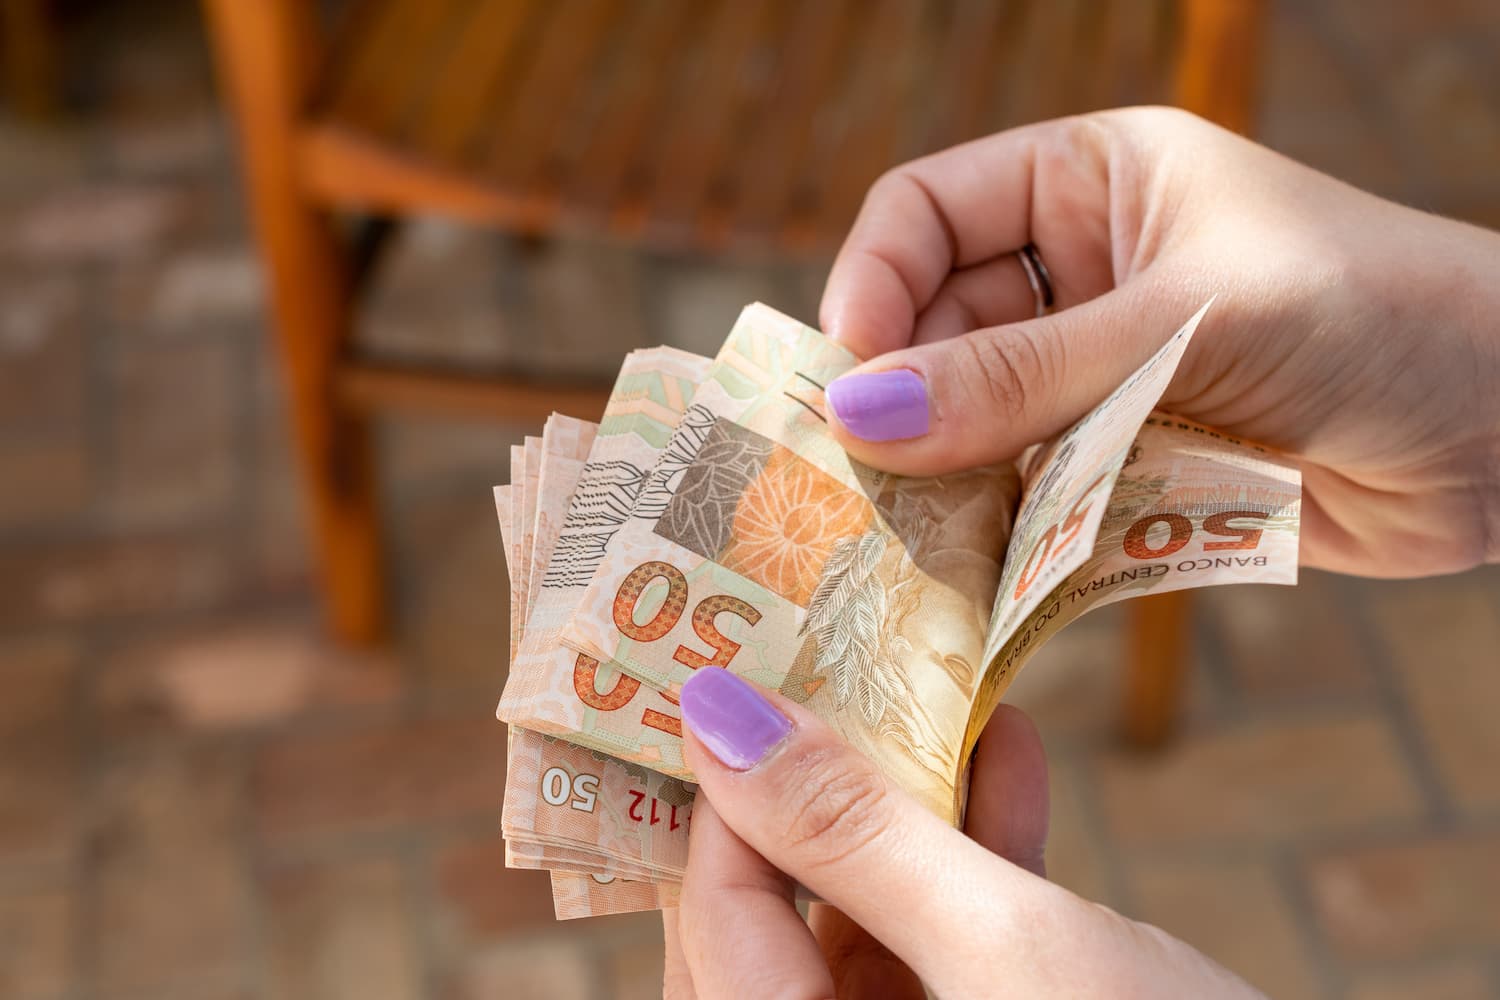 A imagem mostra as mãos de uma pessoa branca, com unhas pintadas de lilás, que está contando notas de 50 reais como exemplo do dissídio salarial. (Foto:Shutterstock / Leonidas Santana)